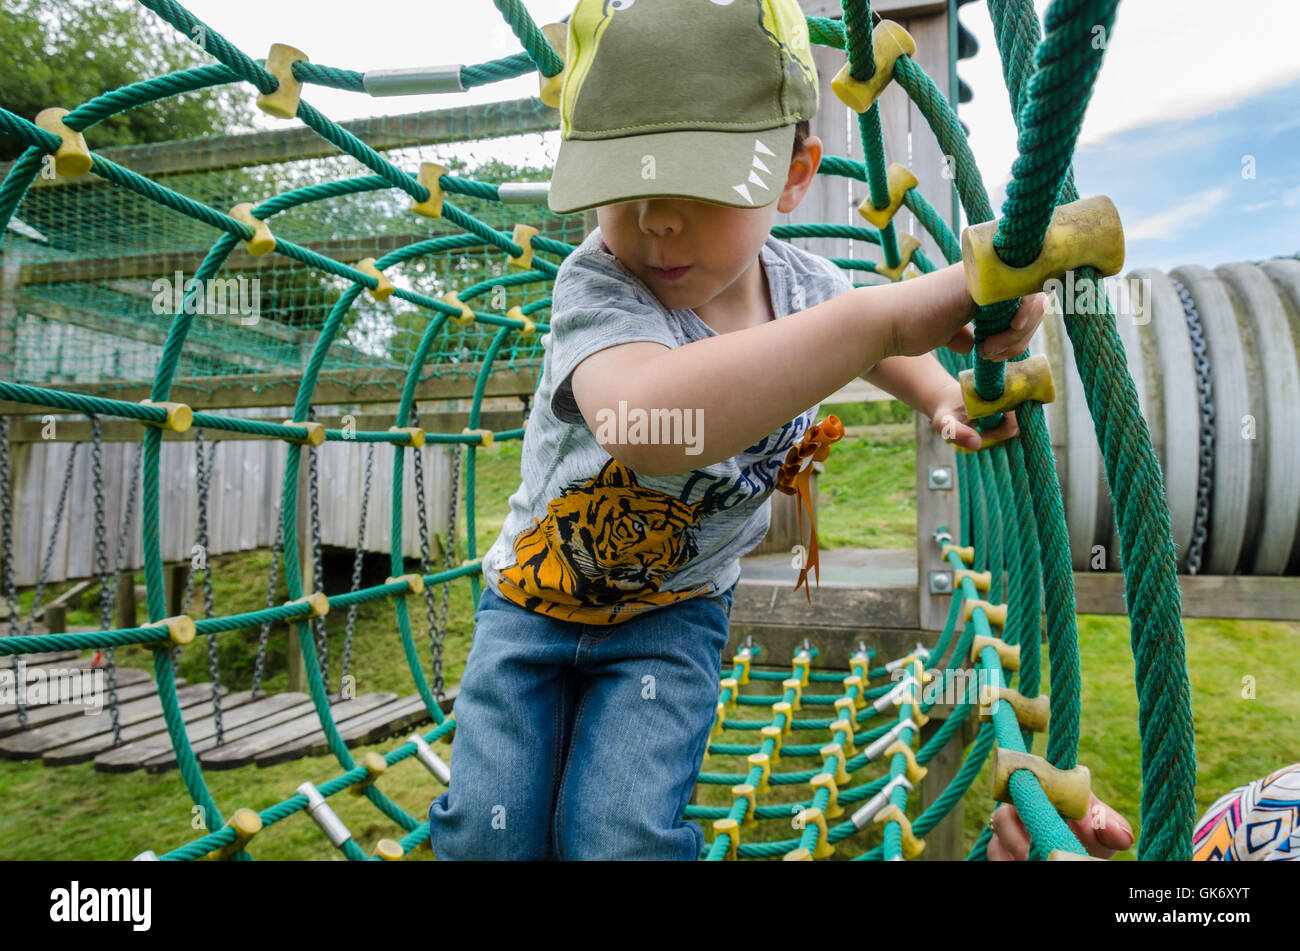 Un jeune garçon joue sur une nette escalade à une aire de jeux pour enfants avec un coup de main de sa maman. Banque D'Images